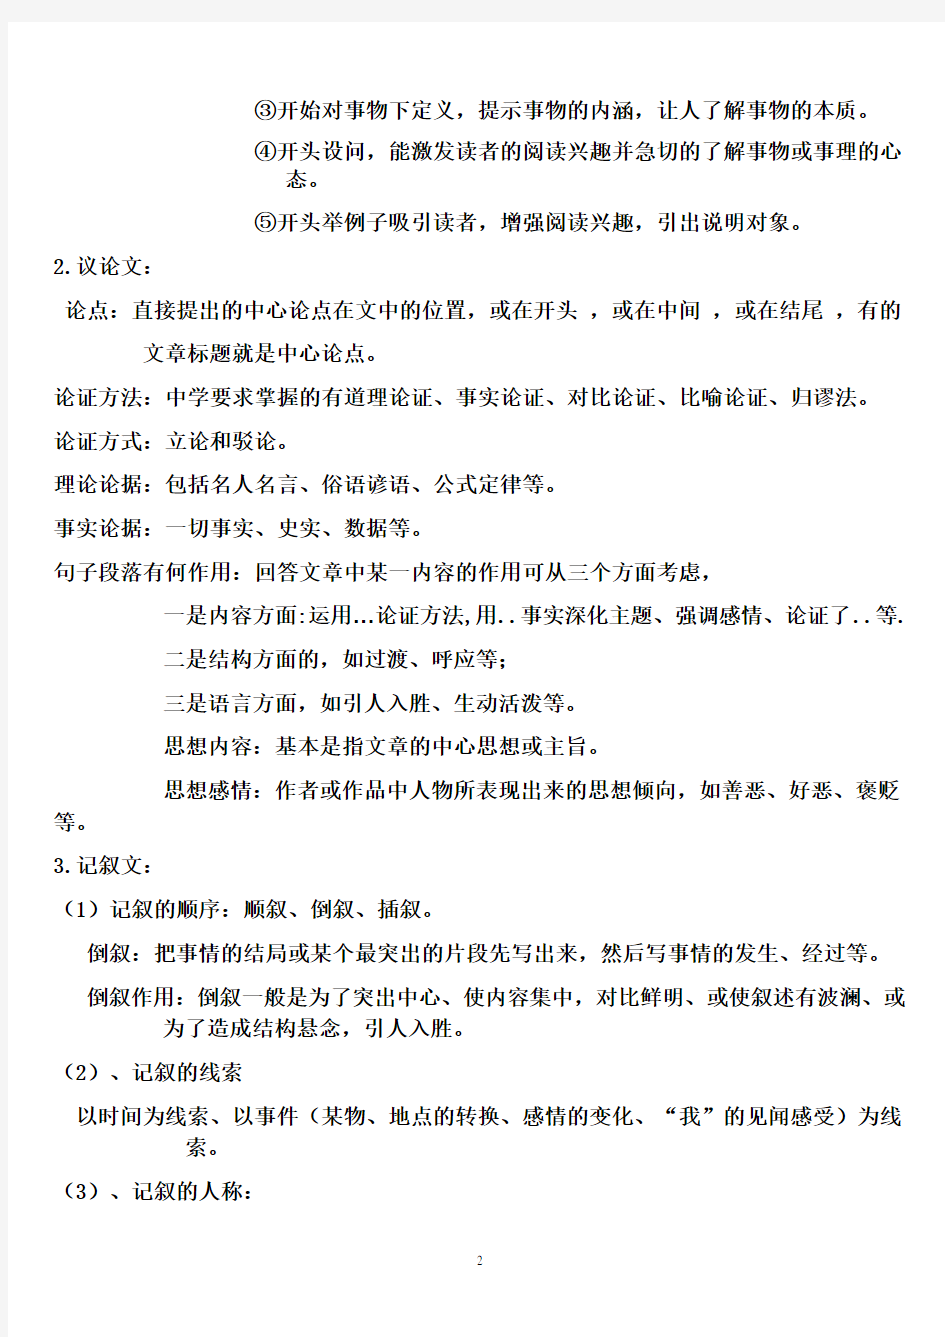 初中语文阅读理解答题公式.pdf